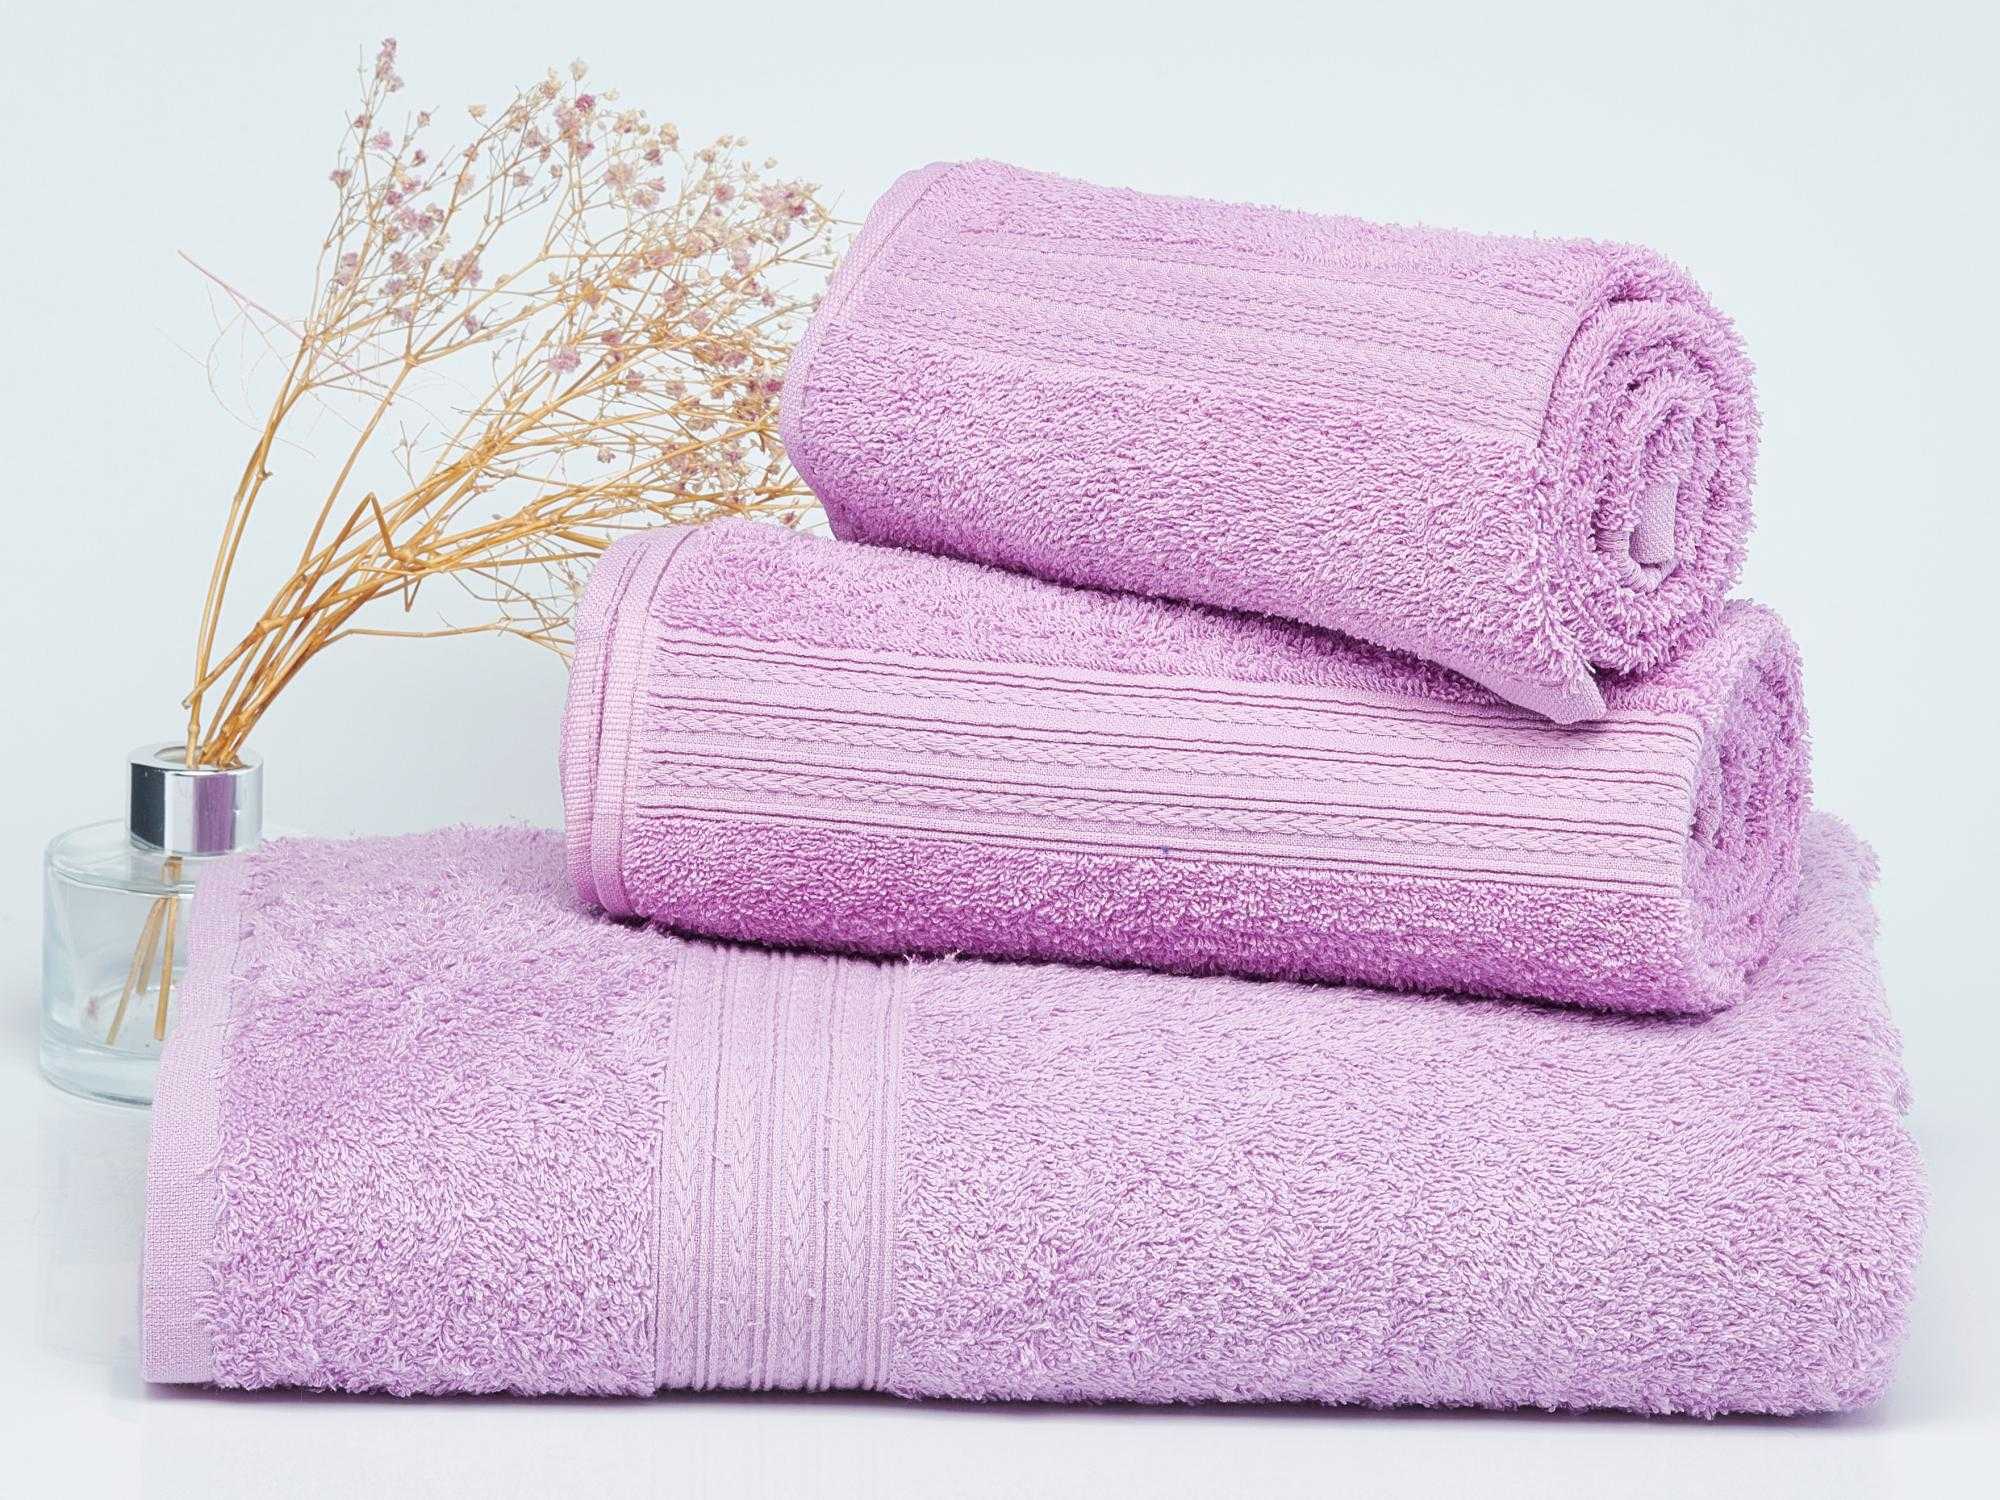 Банное полотенце размеры. стандартный размер банного полотенца для тела. как выбрать подходящий размер? art-textil.ru